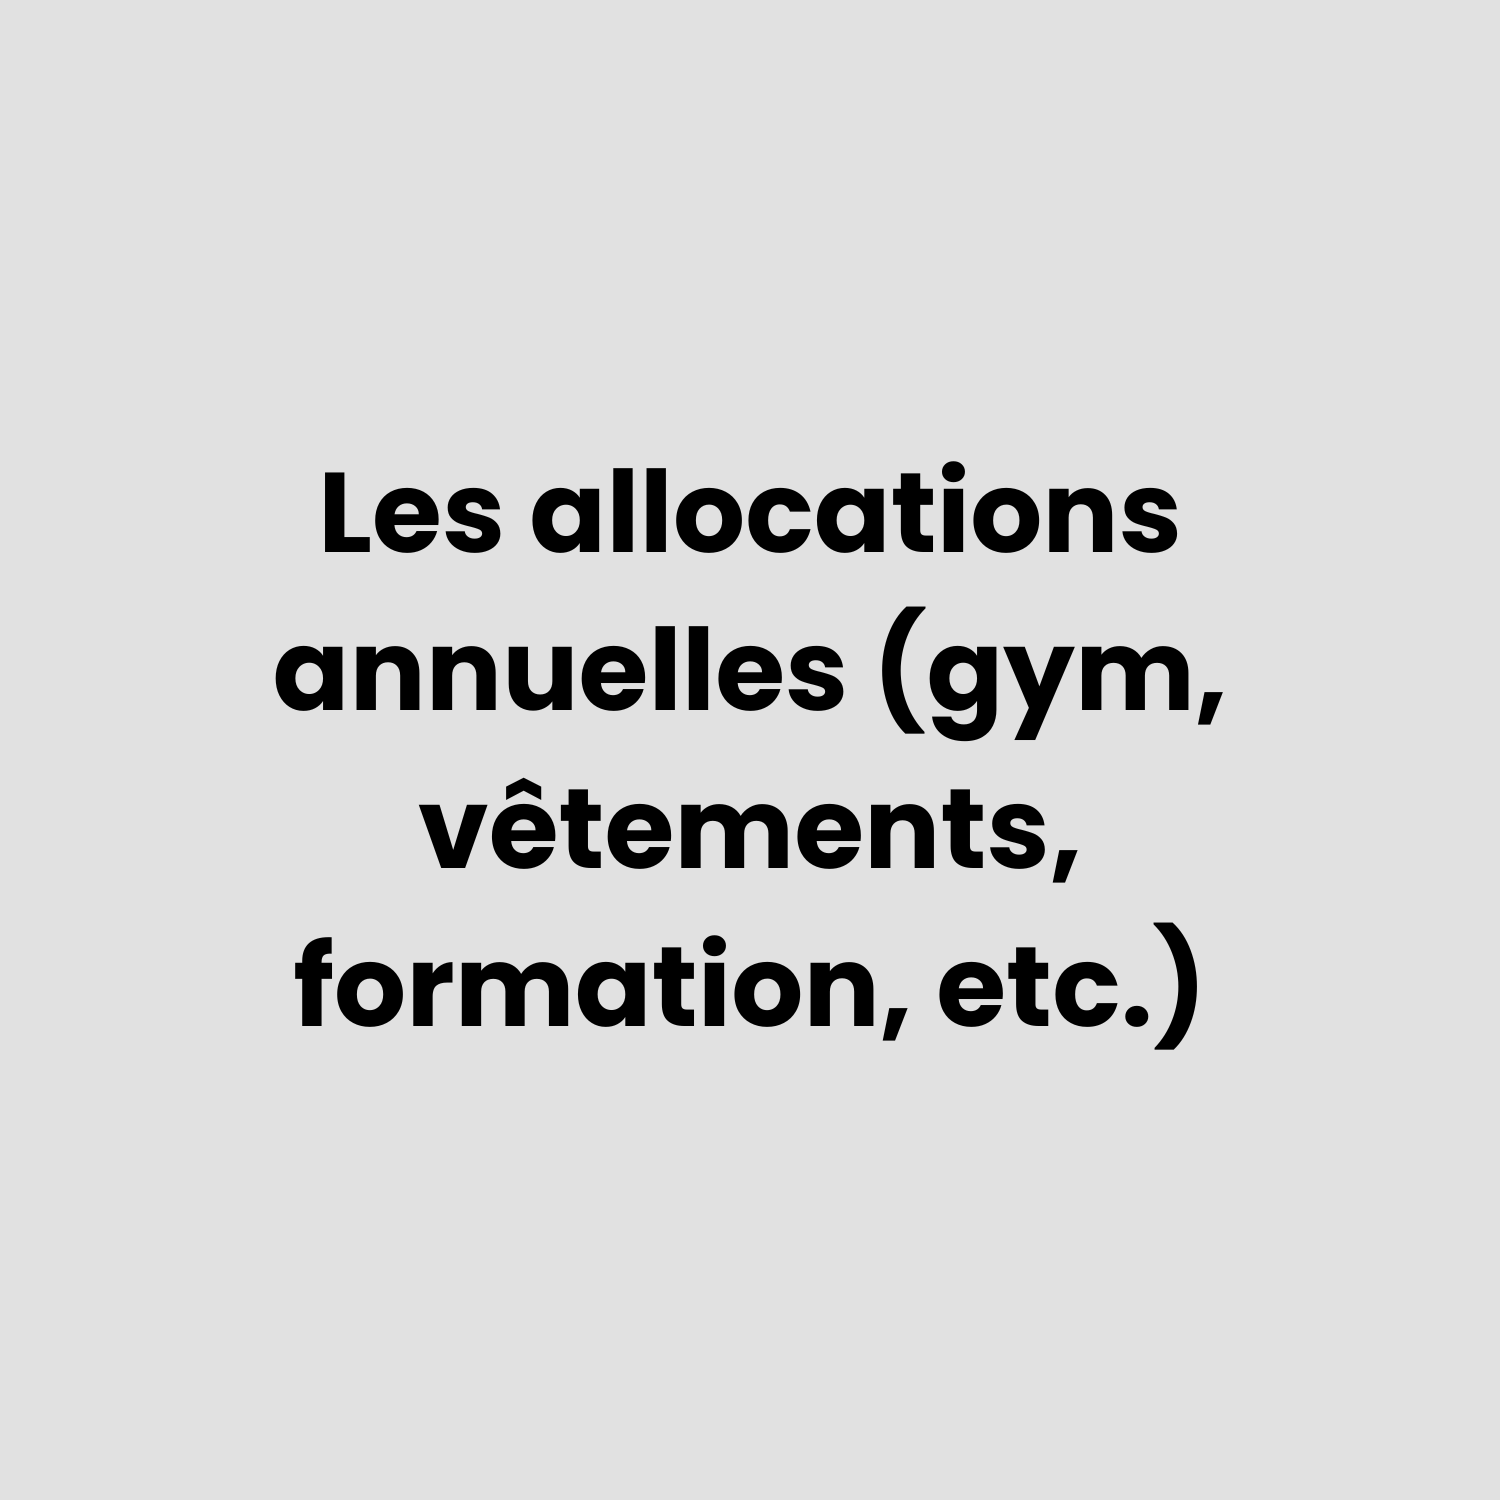 Les allocations annuelles (gym, vêtements, formation, etc.)